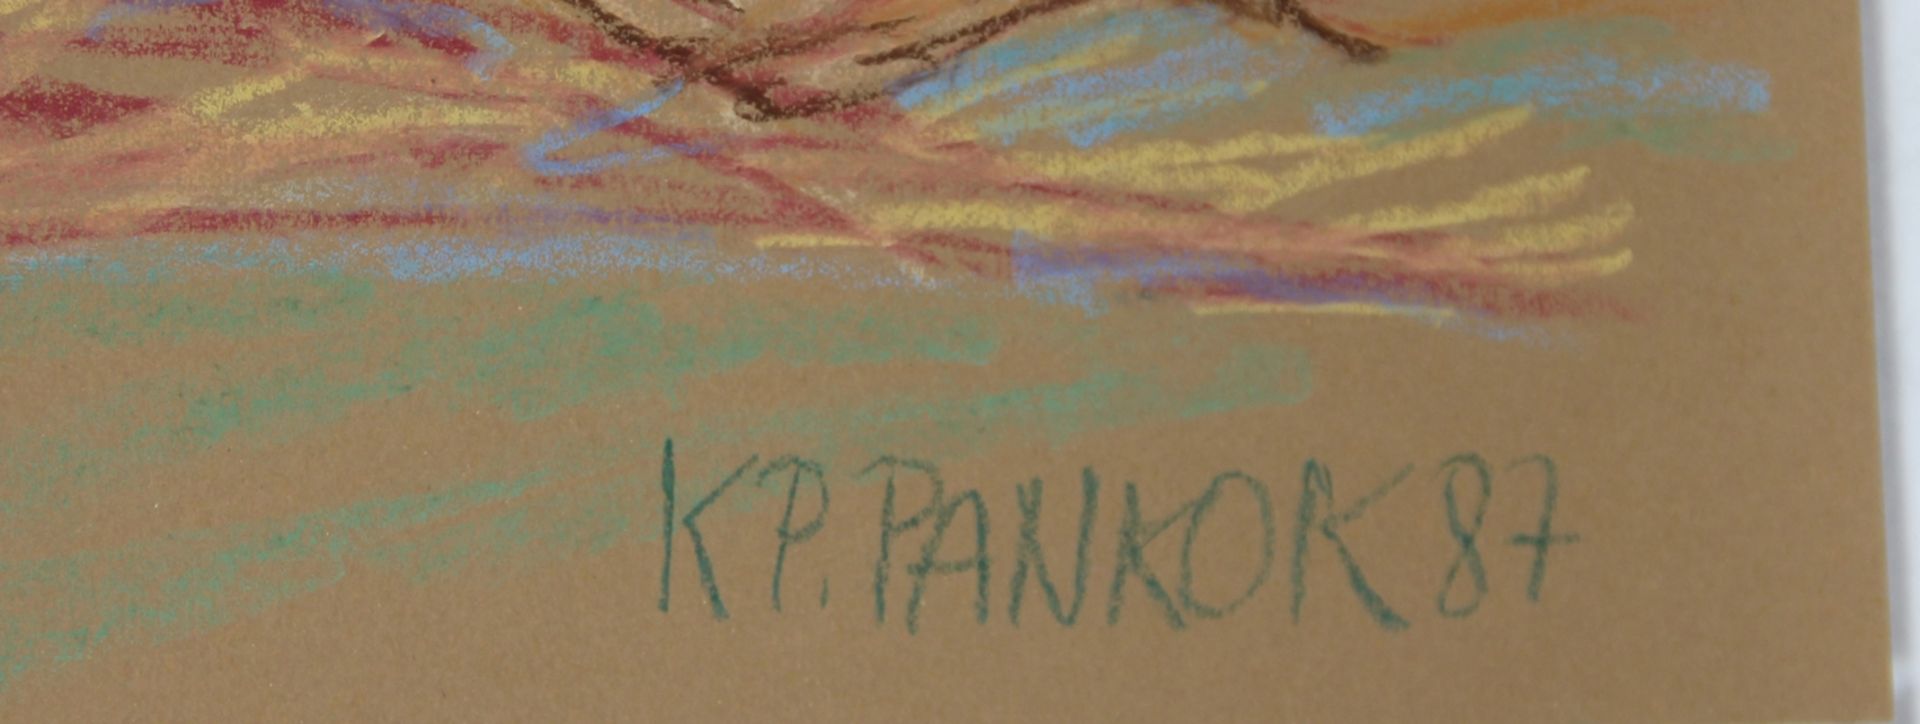 Pankok, KP. - Image 2 of 3